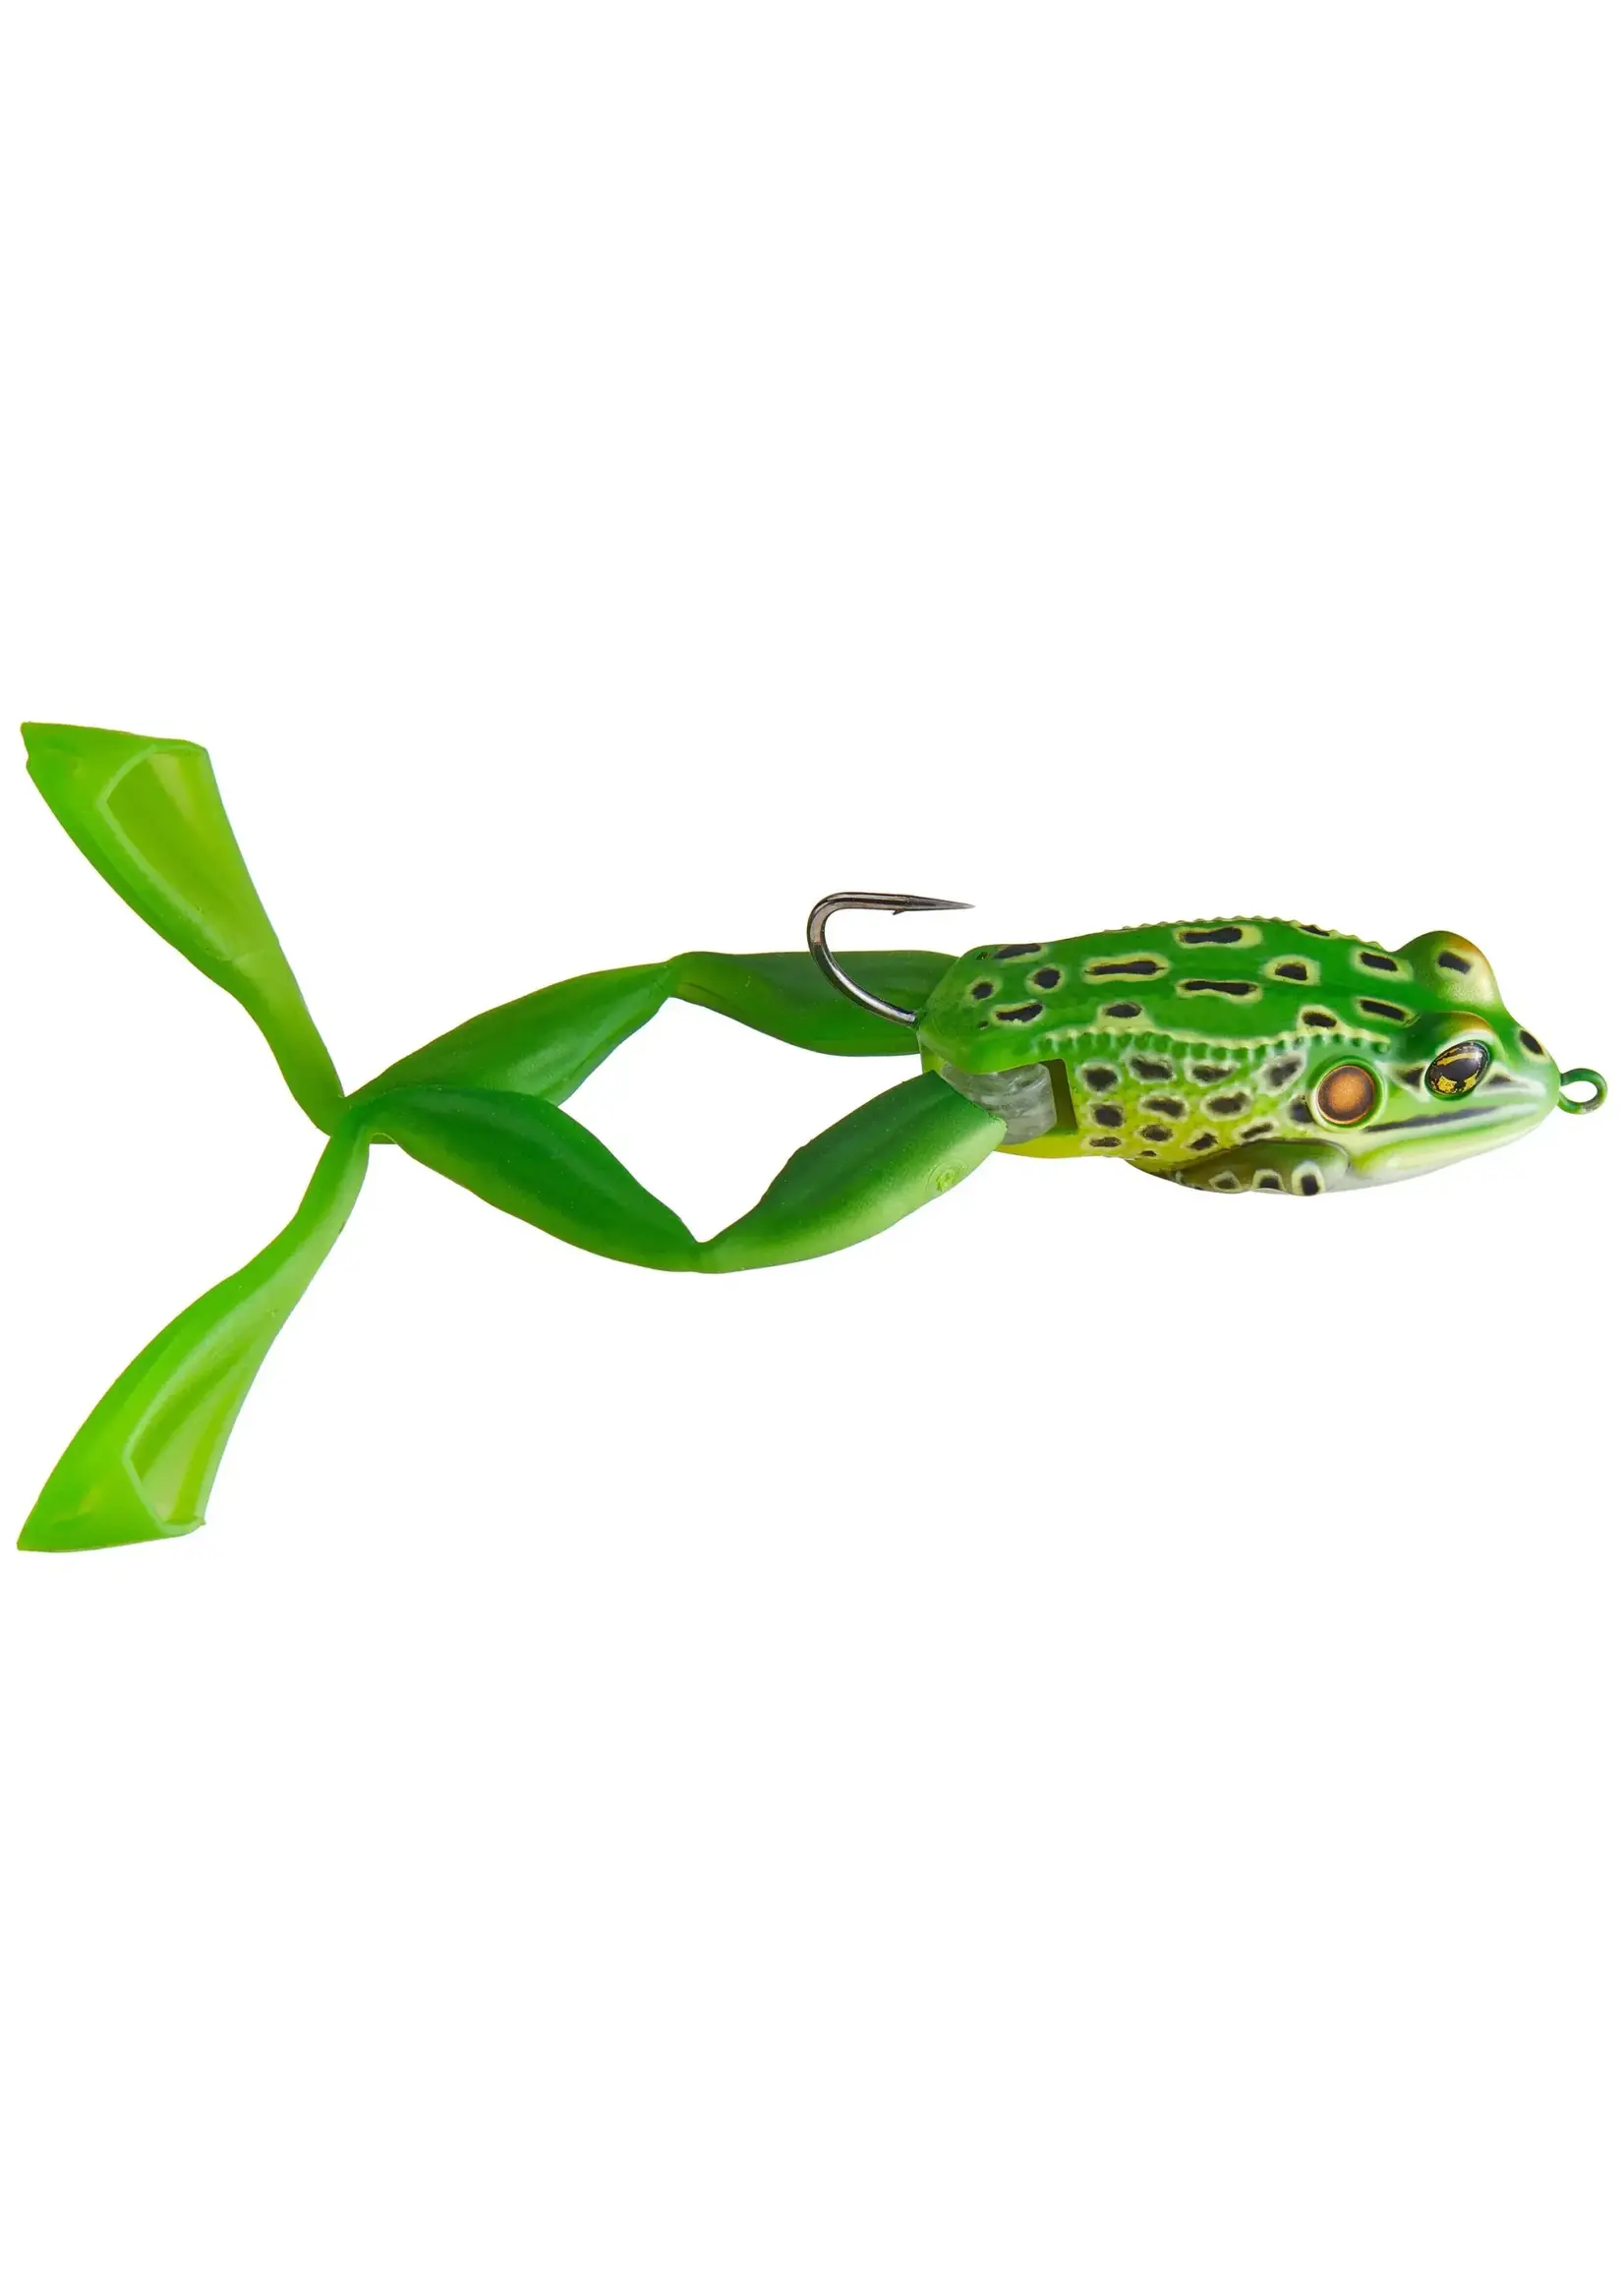 LiveTarget Ultimate Frog Emerald Brown 1oz